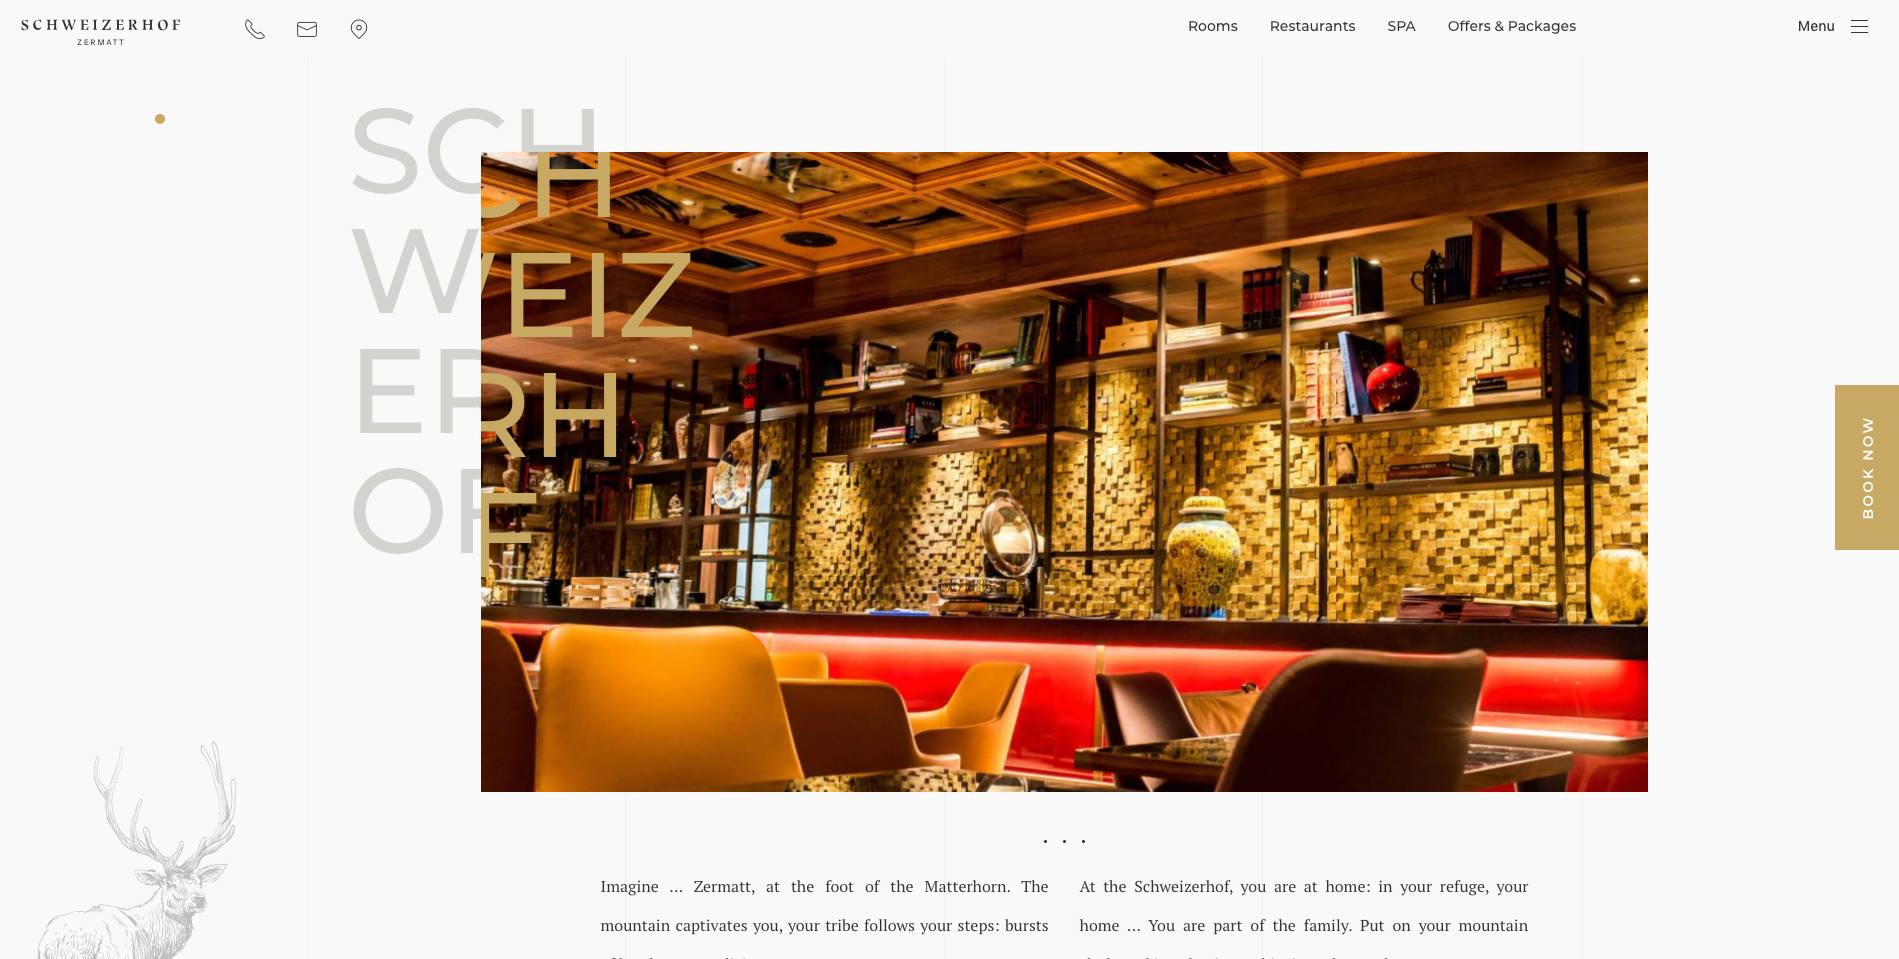 Hotel Schweizerhof website page